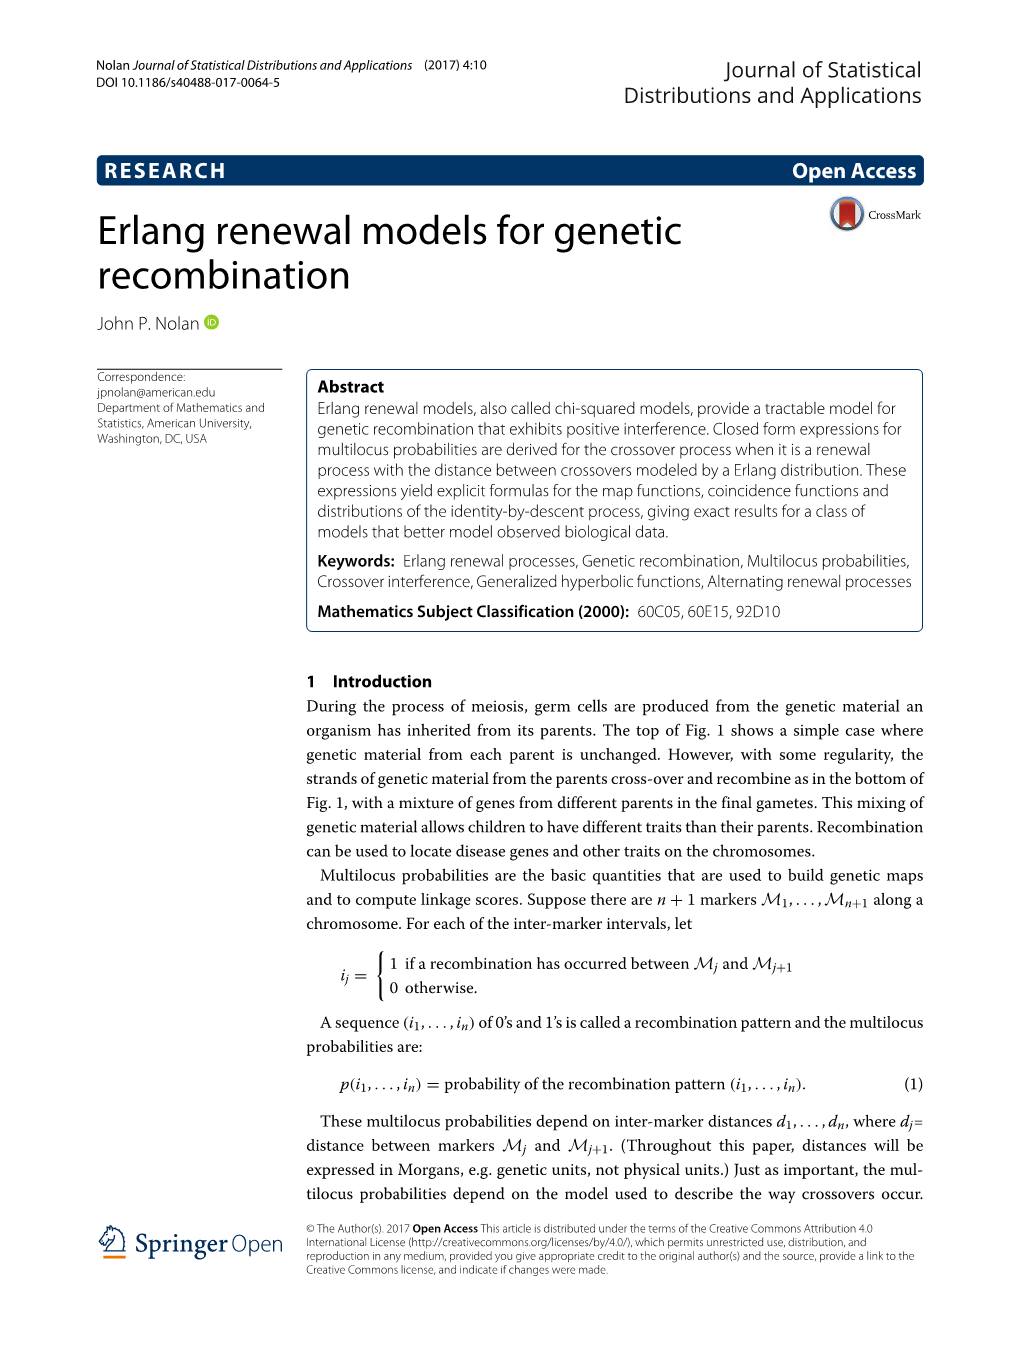 Erlang Renewal Models for Genetic Recombination John P